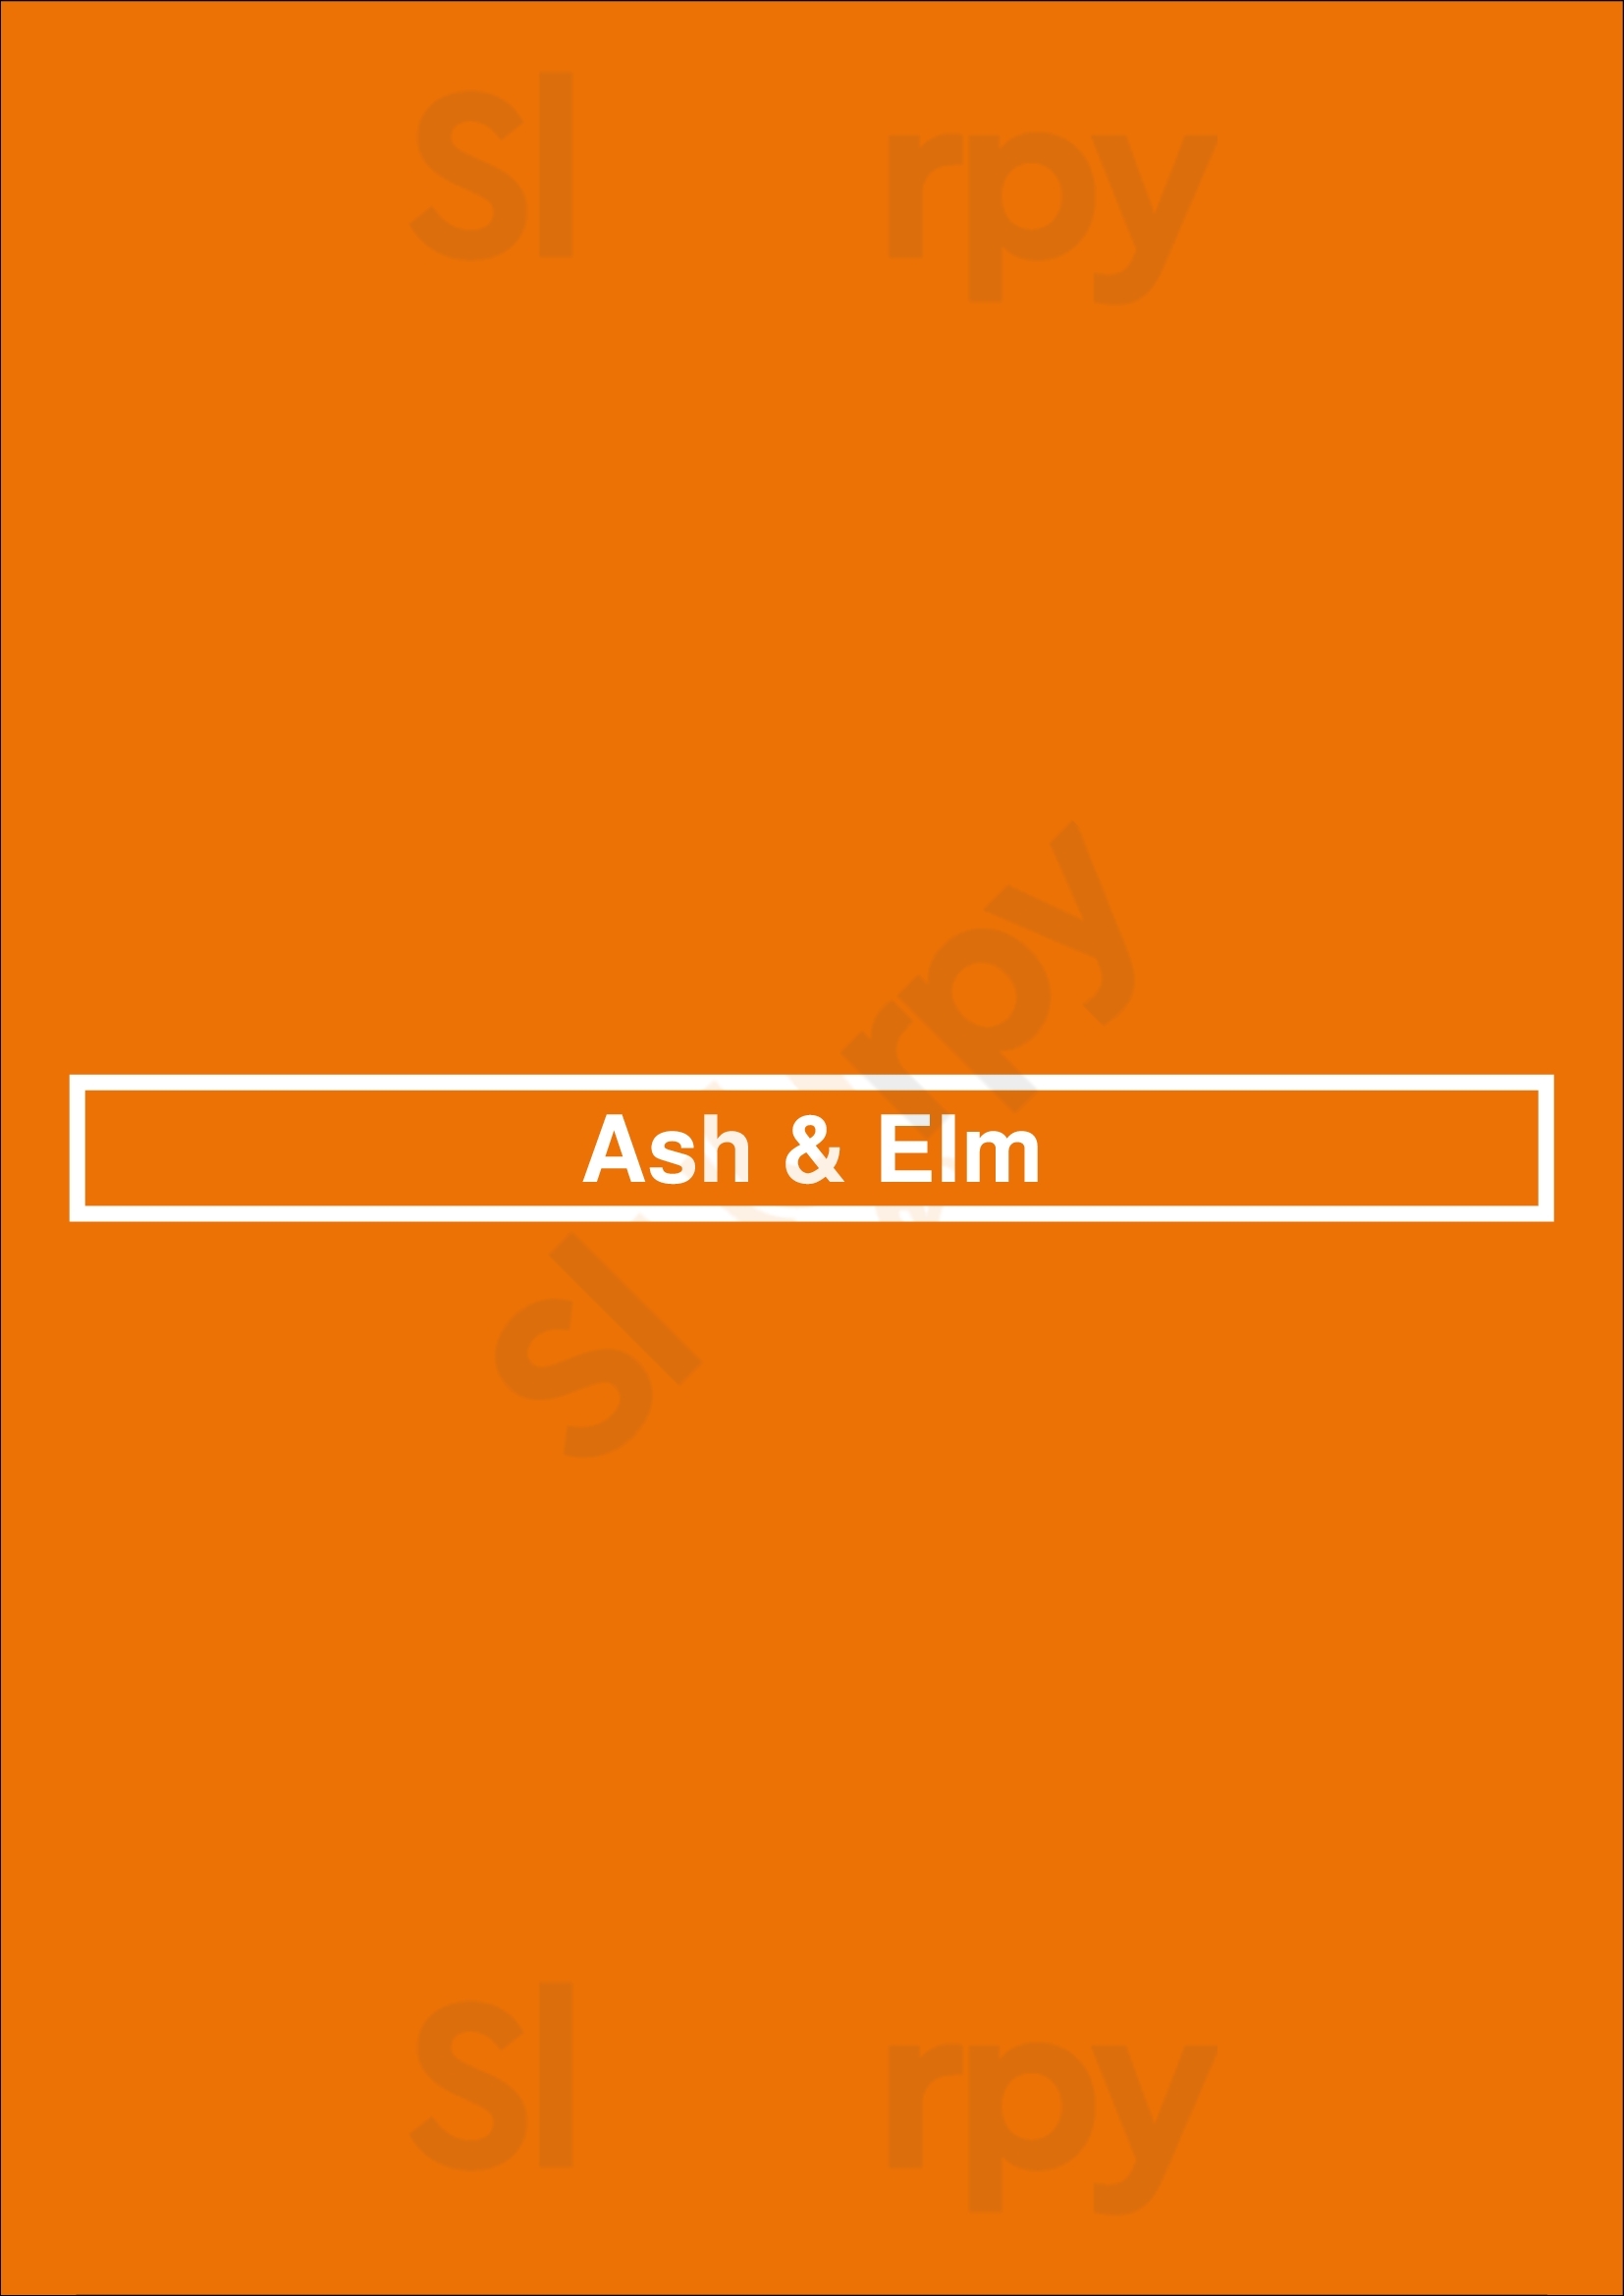 Ash & Elm Singapore Menu - 1